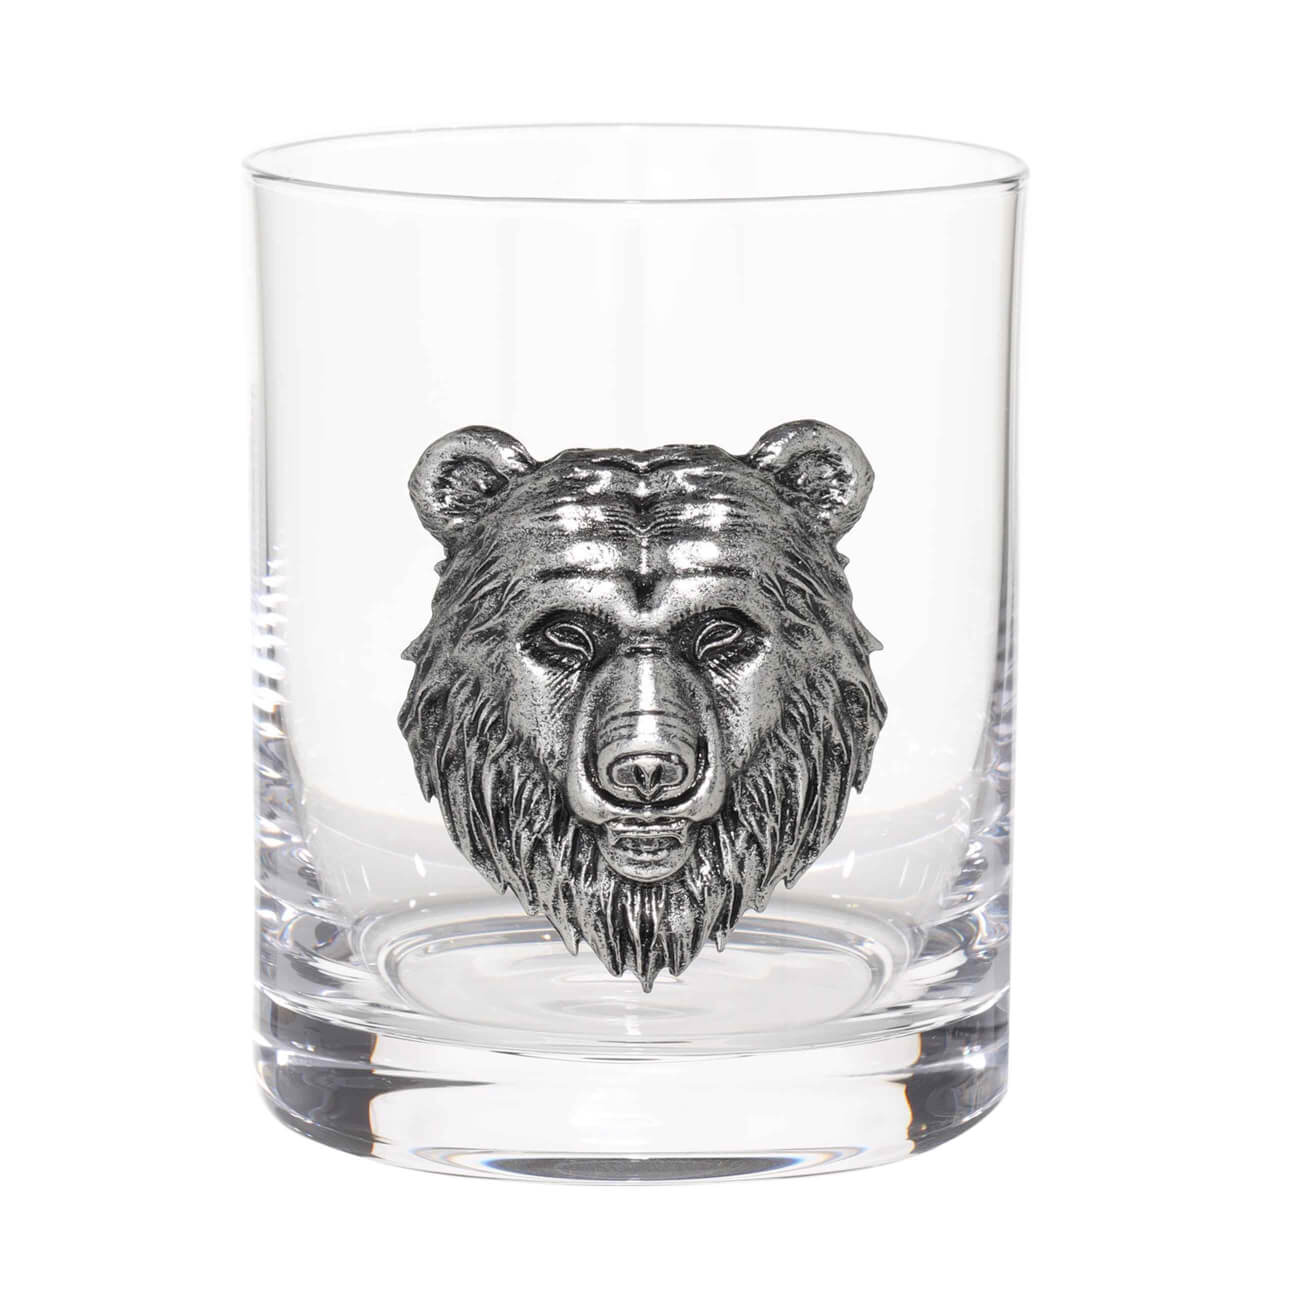 Стакан для виски, 340 мл, стекло/металл, серебристый, Медведь, Lux elements читаем сами маша и медведь